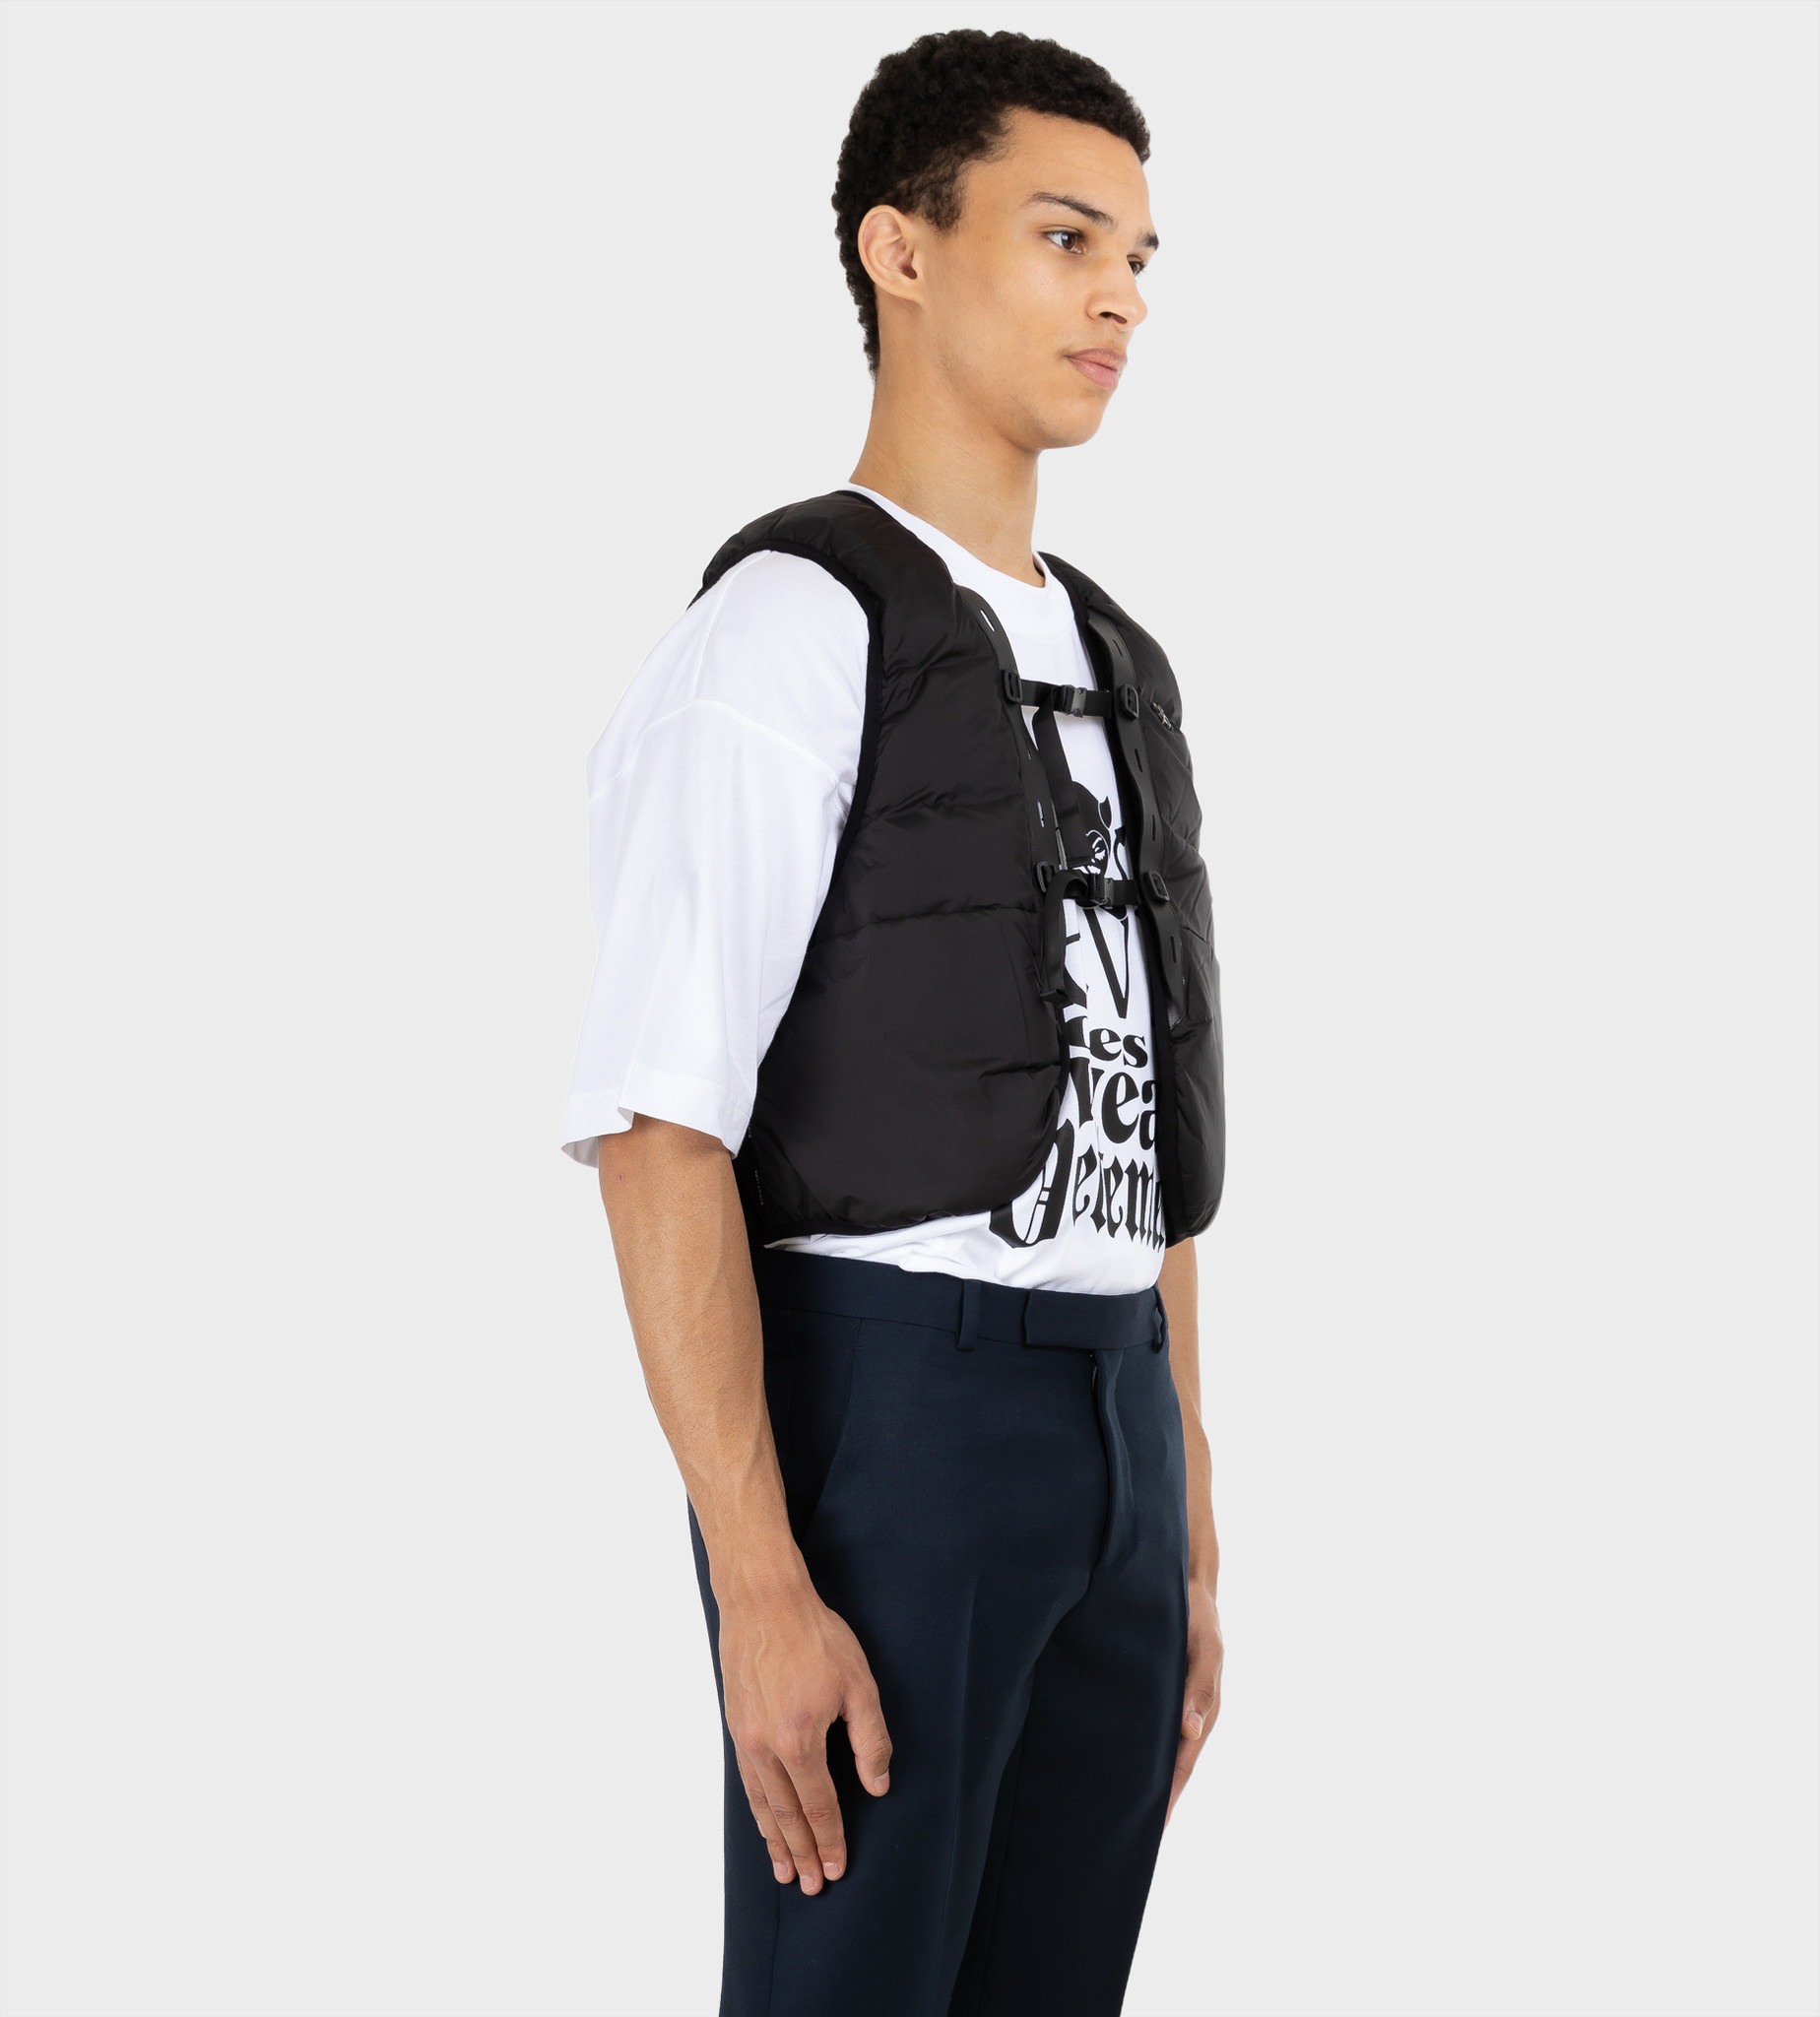 doorgaan met dood gaan beest DAILY PAPER Myles Vest Black - Onlinekleding